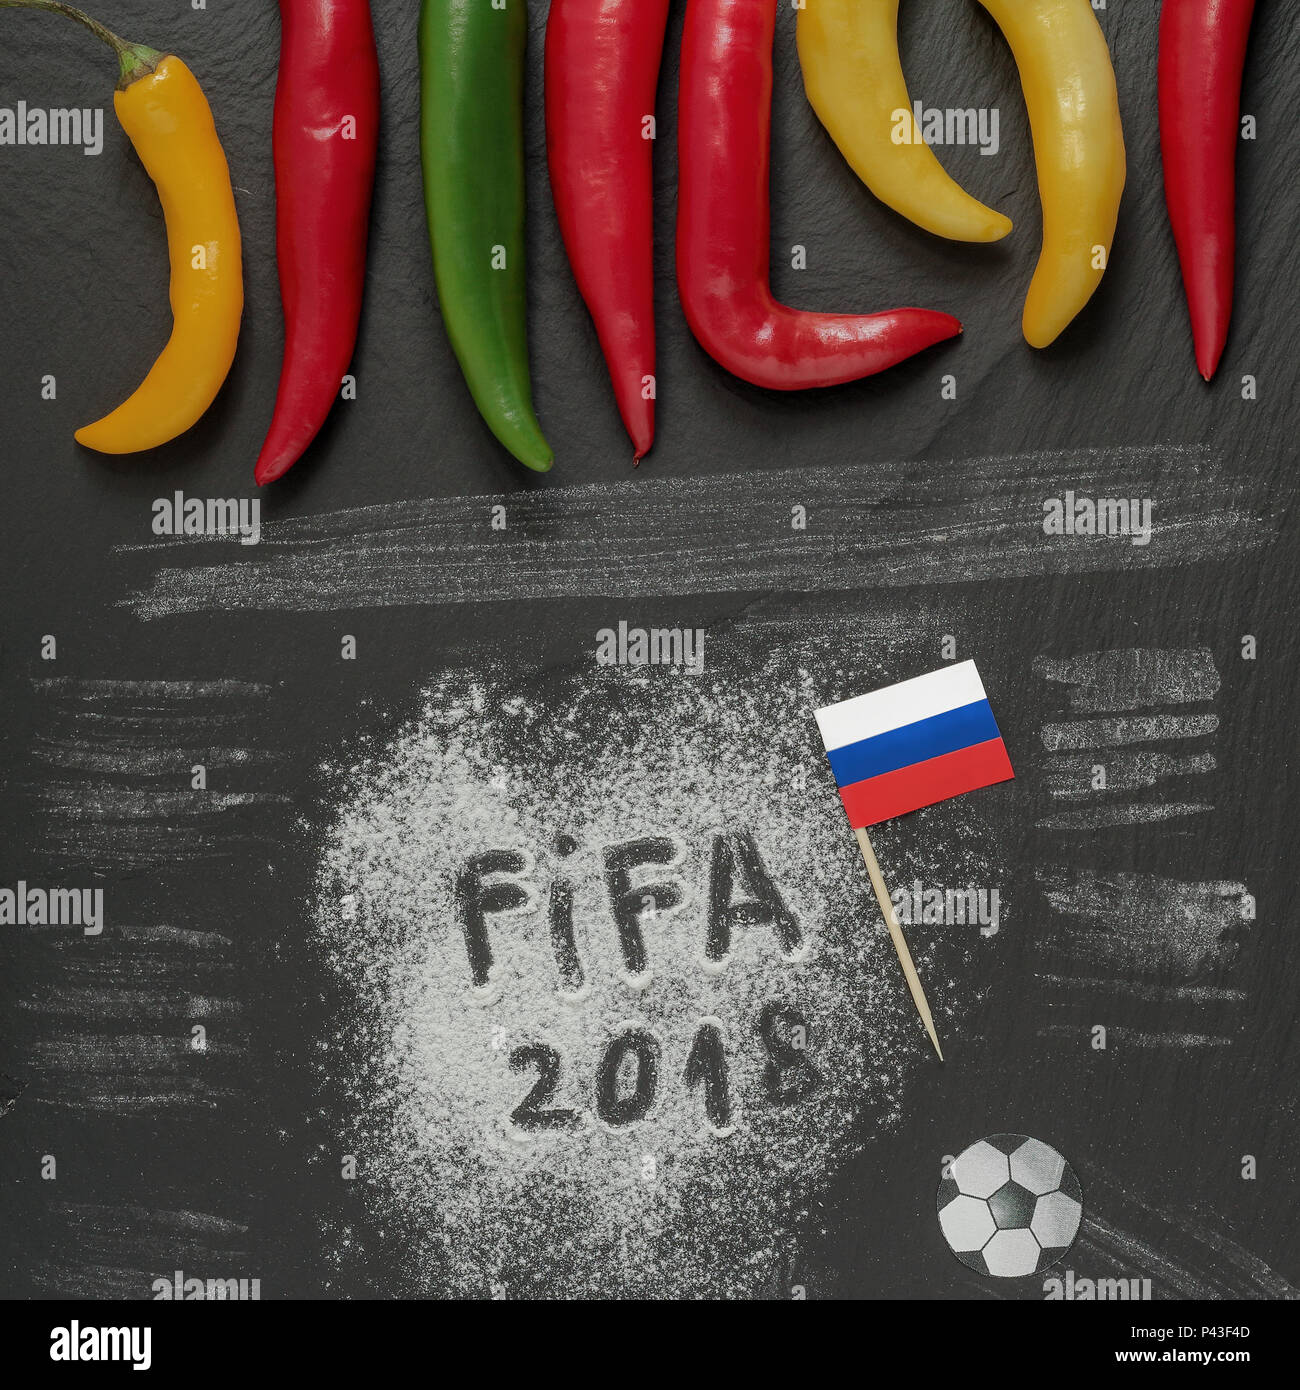 La Copa Mundial de la fifa 2018 Rusia,harina escrito con bandera de papel de bricolaje,una pelota de fútbol y algunos hot chili peppers. Foto de stock